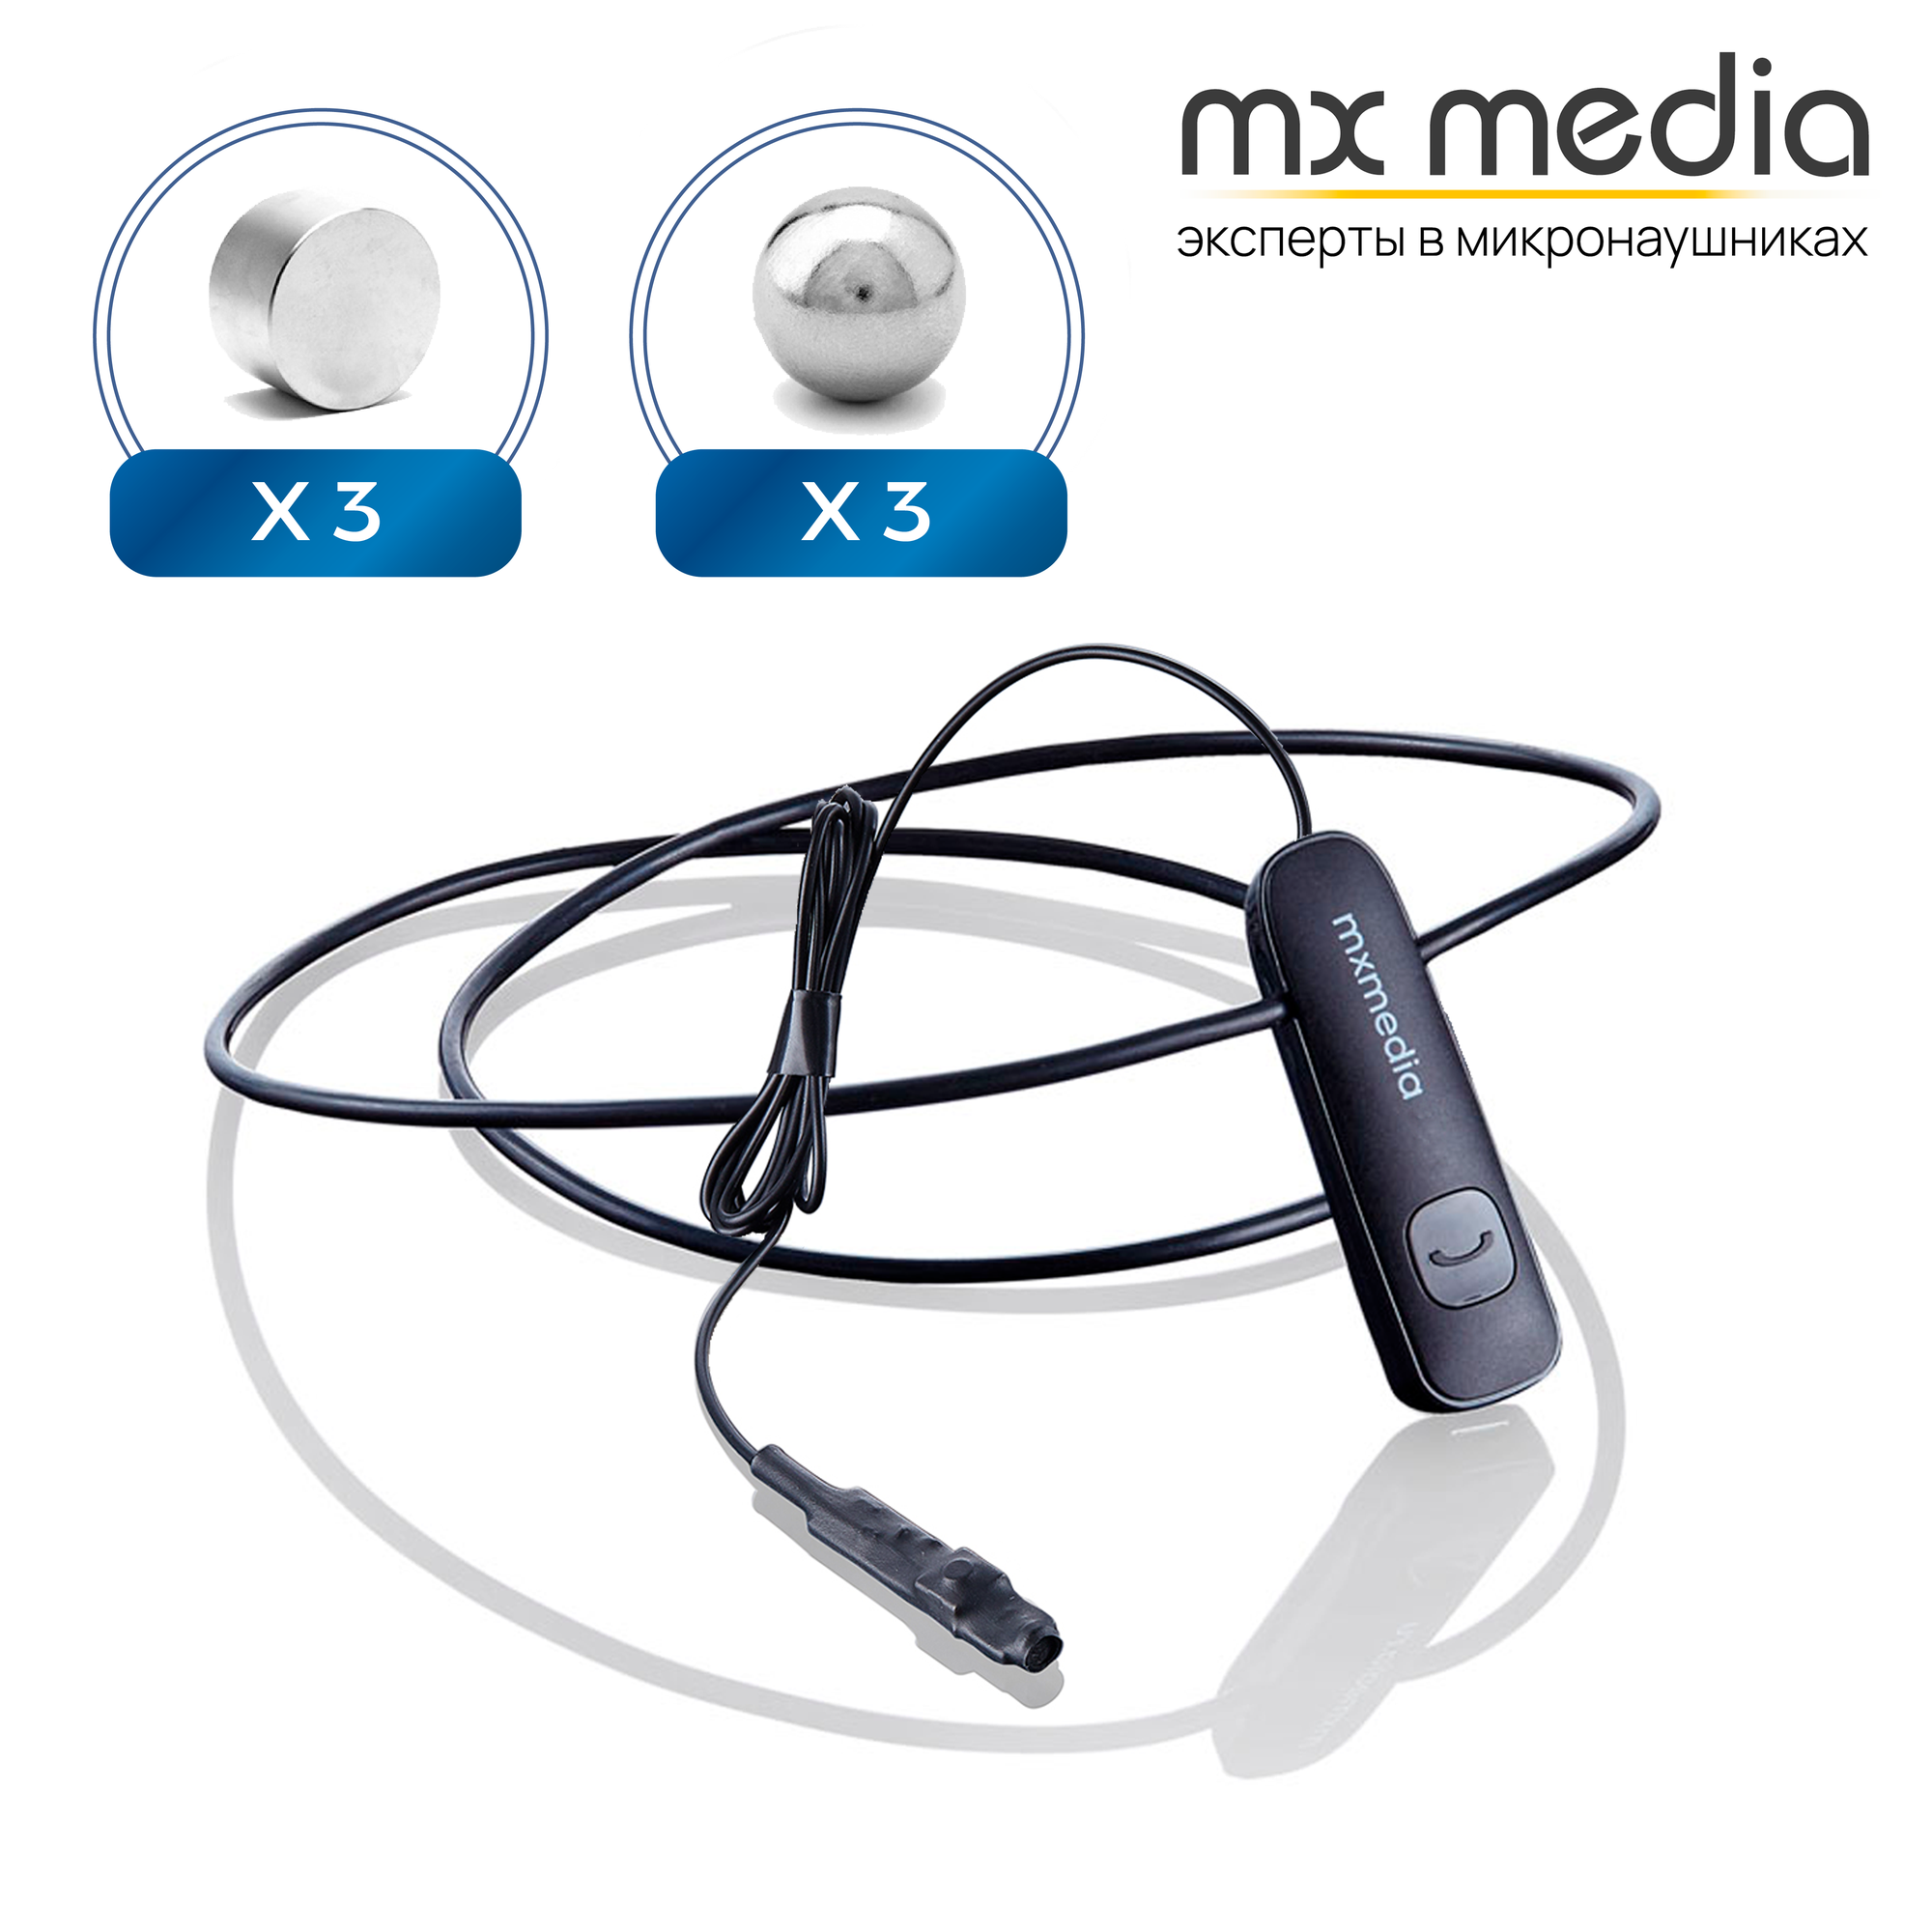 Микронаушник магнитный MXMEDIA Magnet Bluetooth с выведенным микрофоном и кнопкой пищалкой